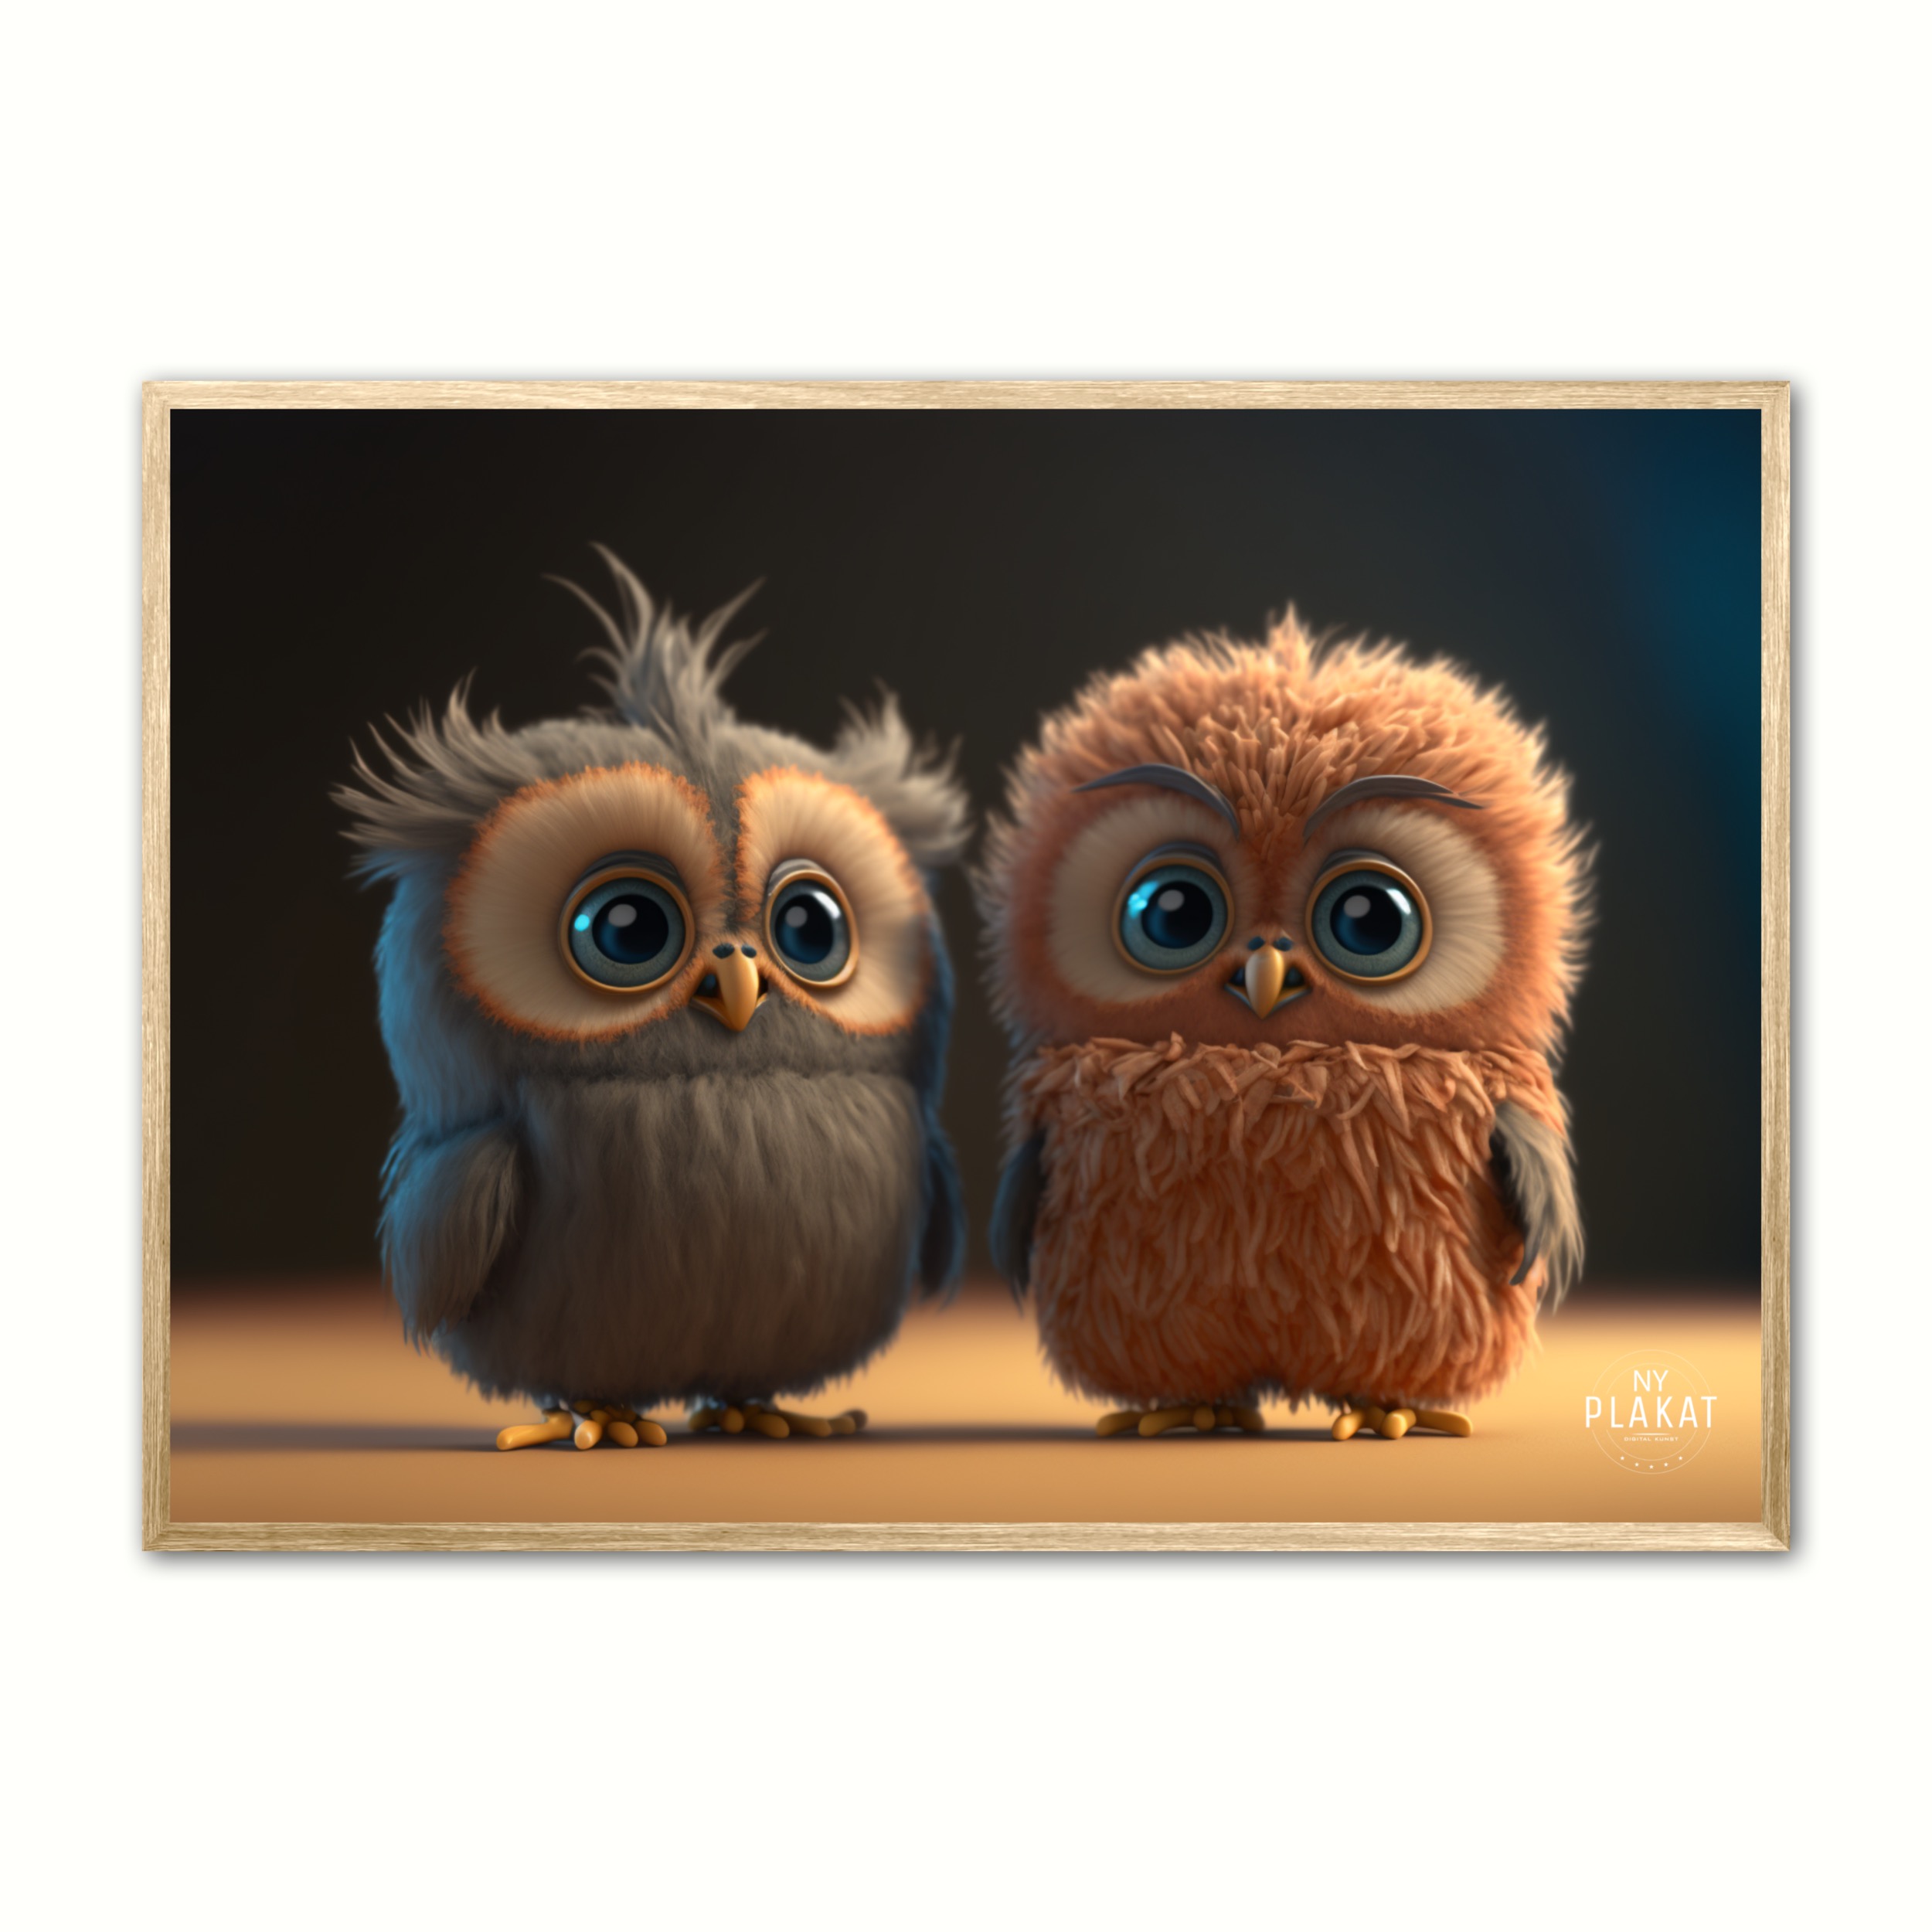 Plakat med Owltie and Owltoe - Ugle 21 x 29,7 cm (A4)